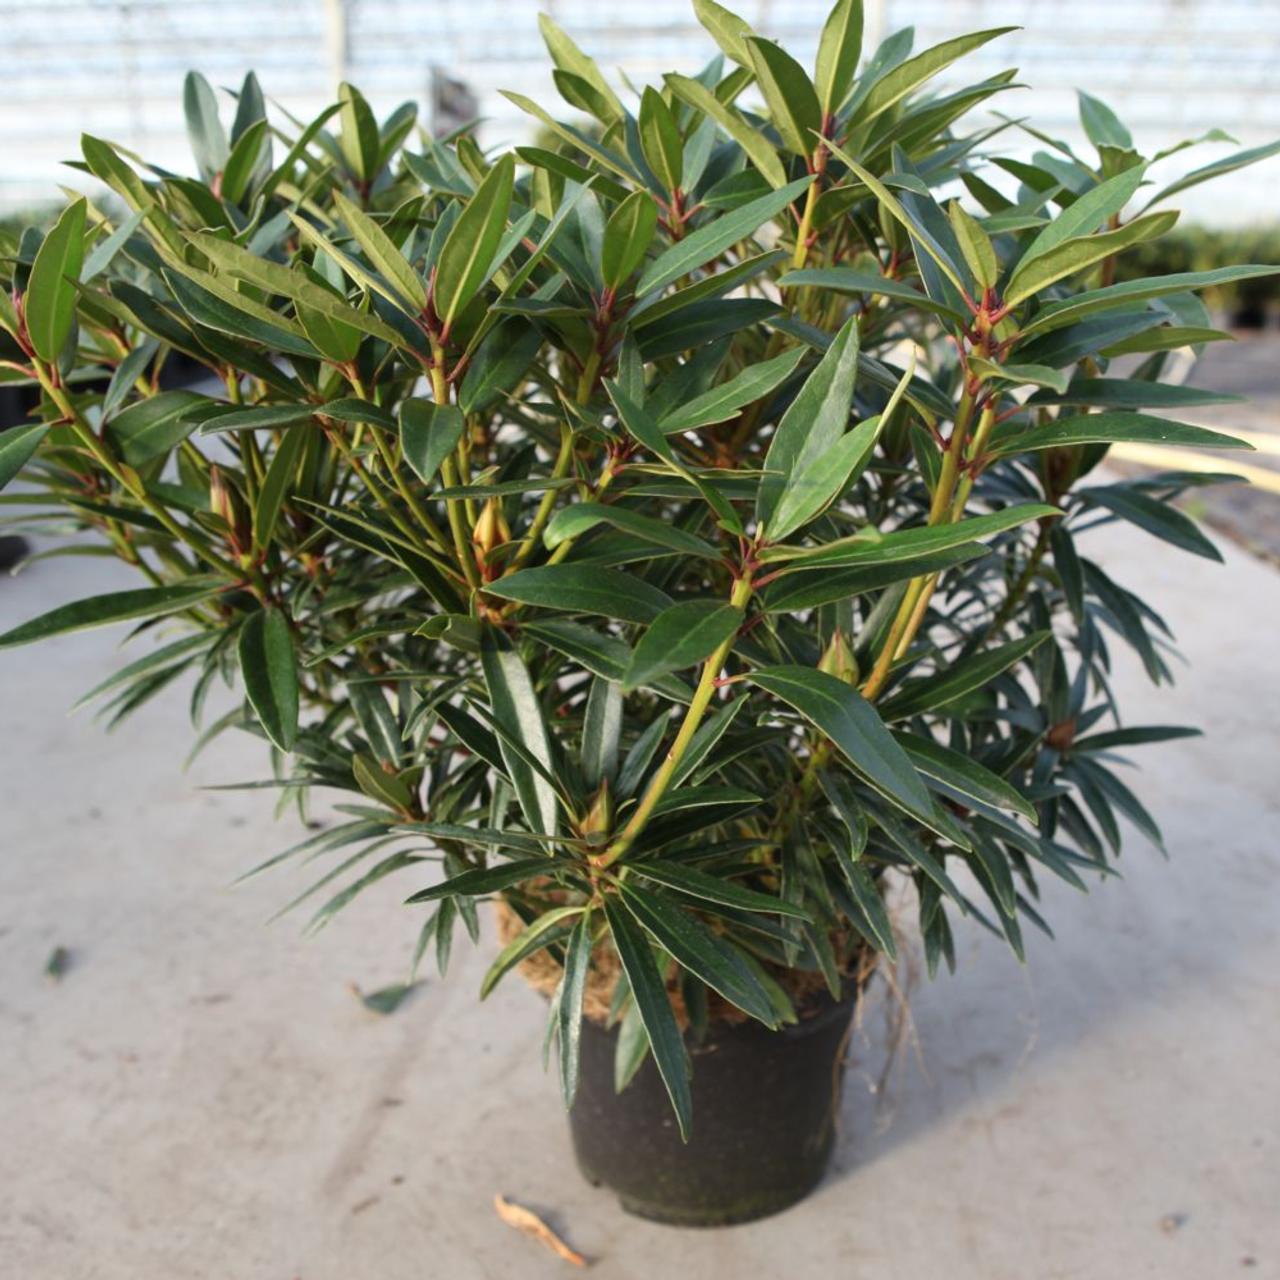 Rhododendron 'Graziella' plant